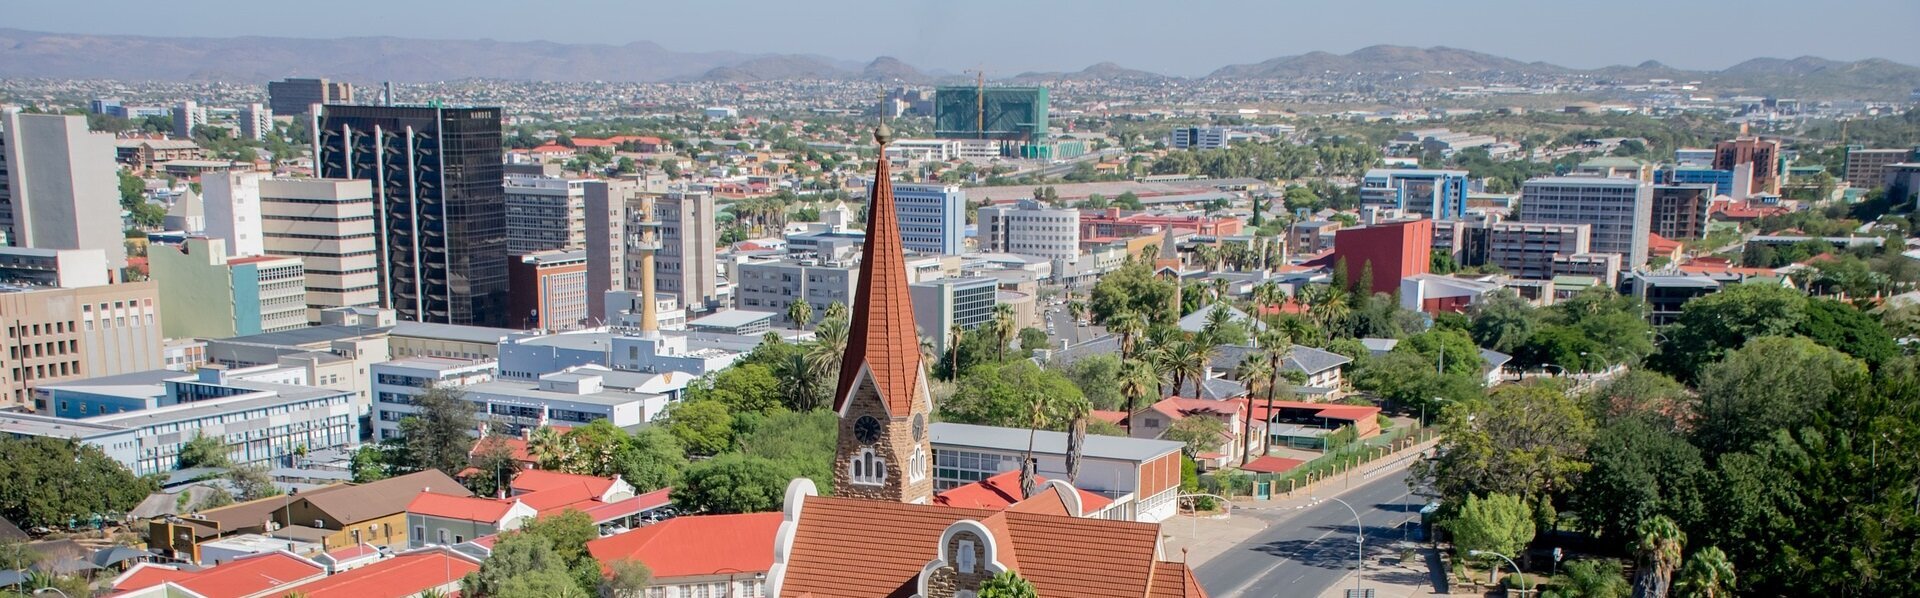 Das Bild zeigt ein Stadtansicht von Windhoek in Namibia.